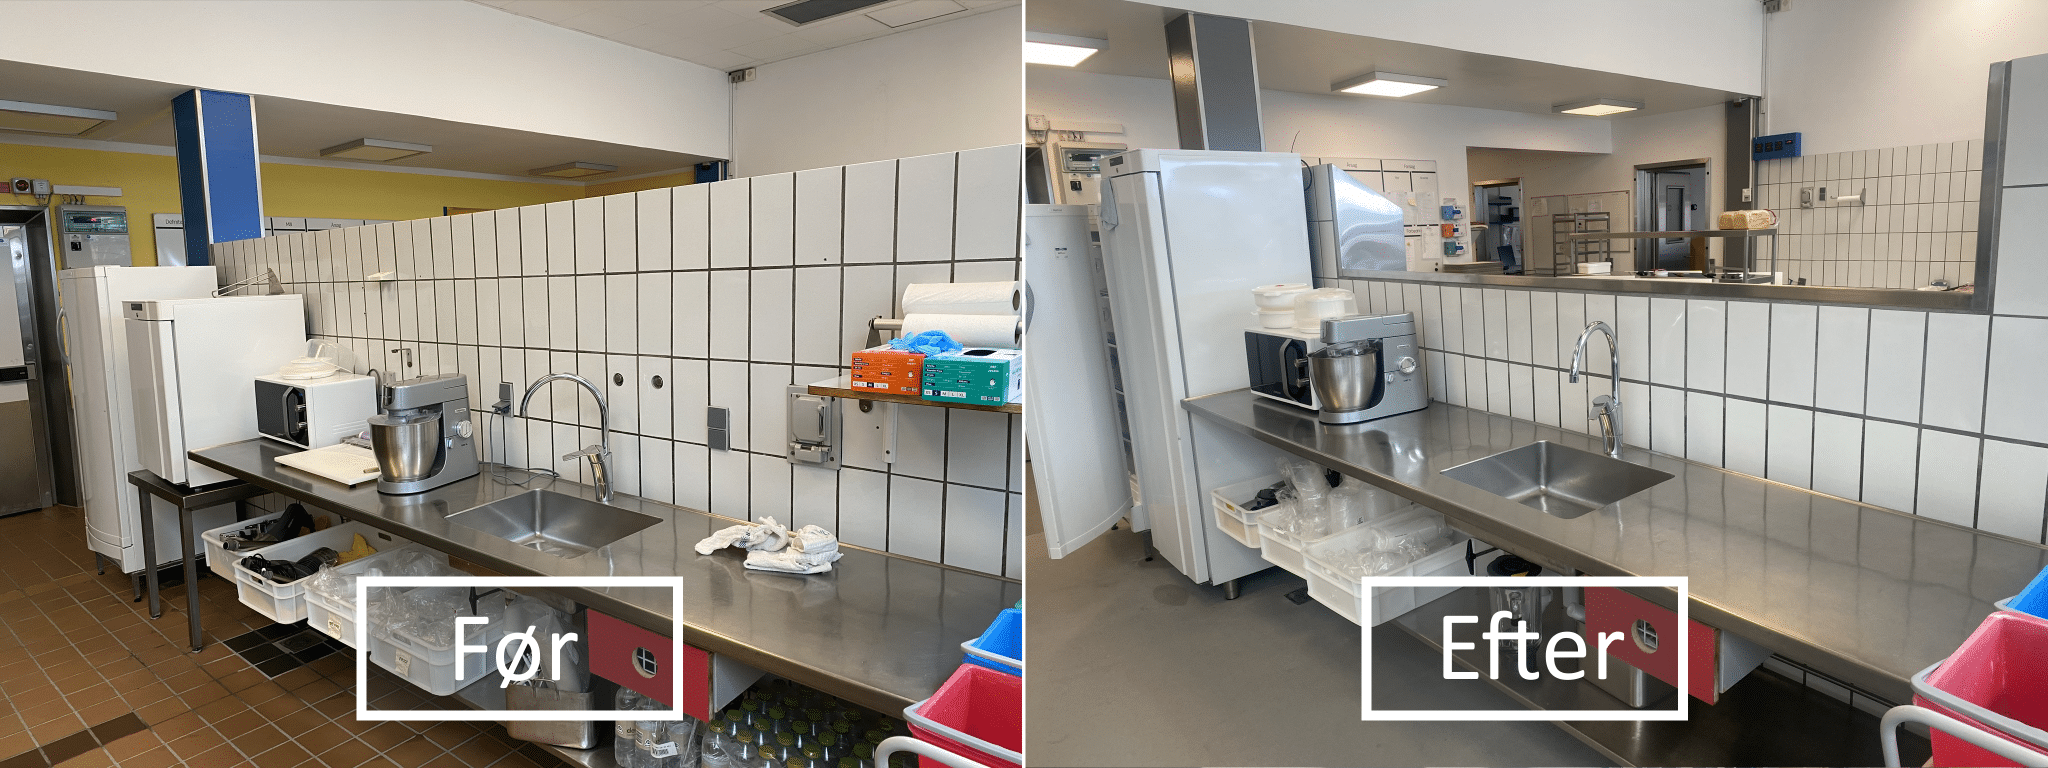 Renovering af køkkengulve på Bornholms Hospital